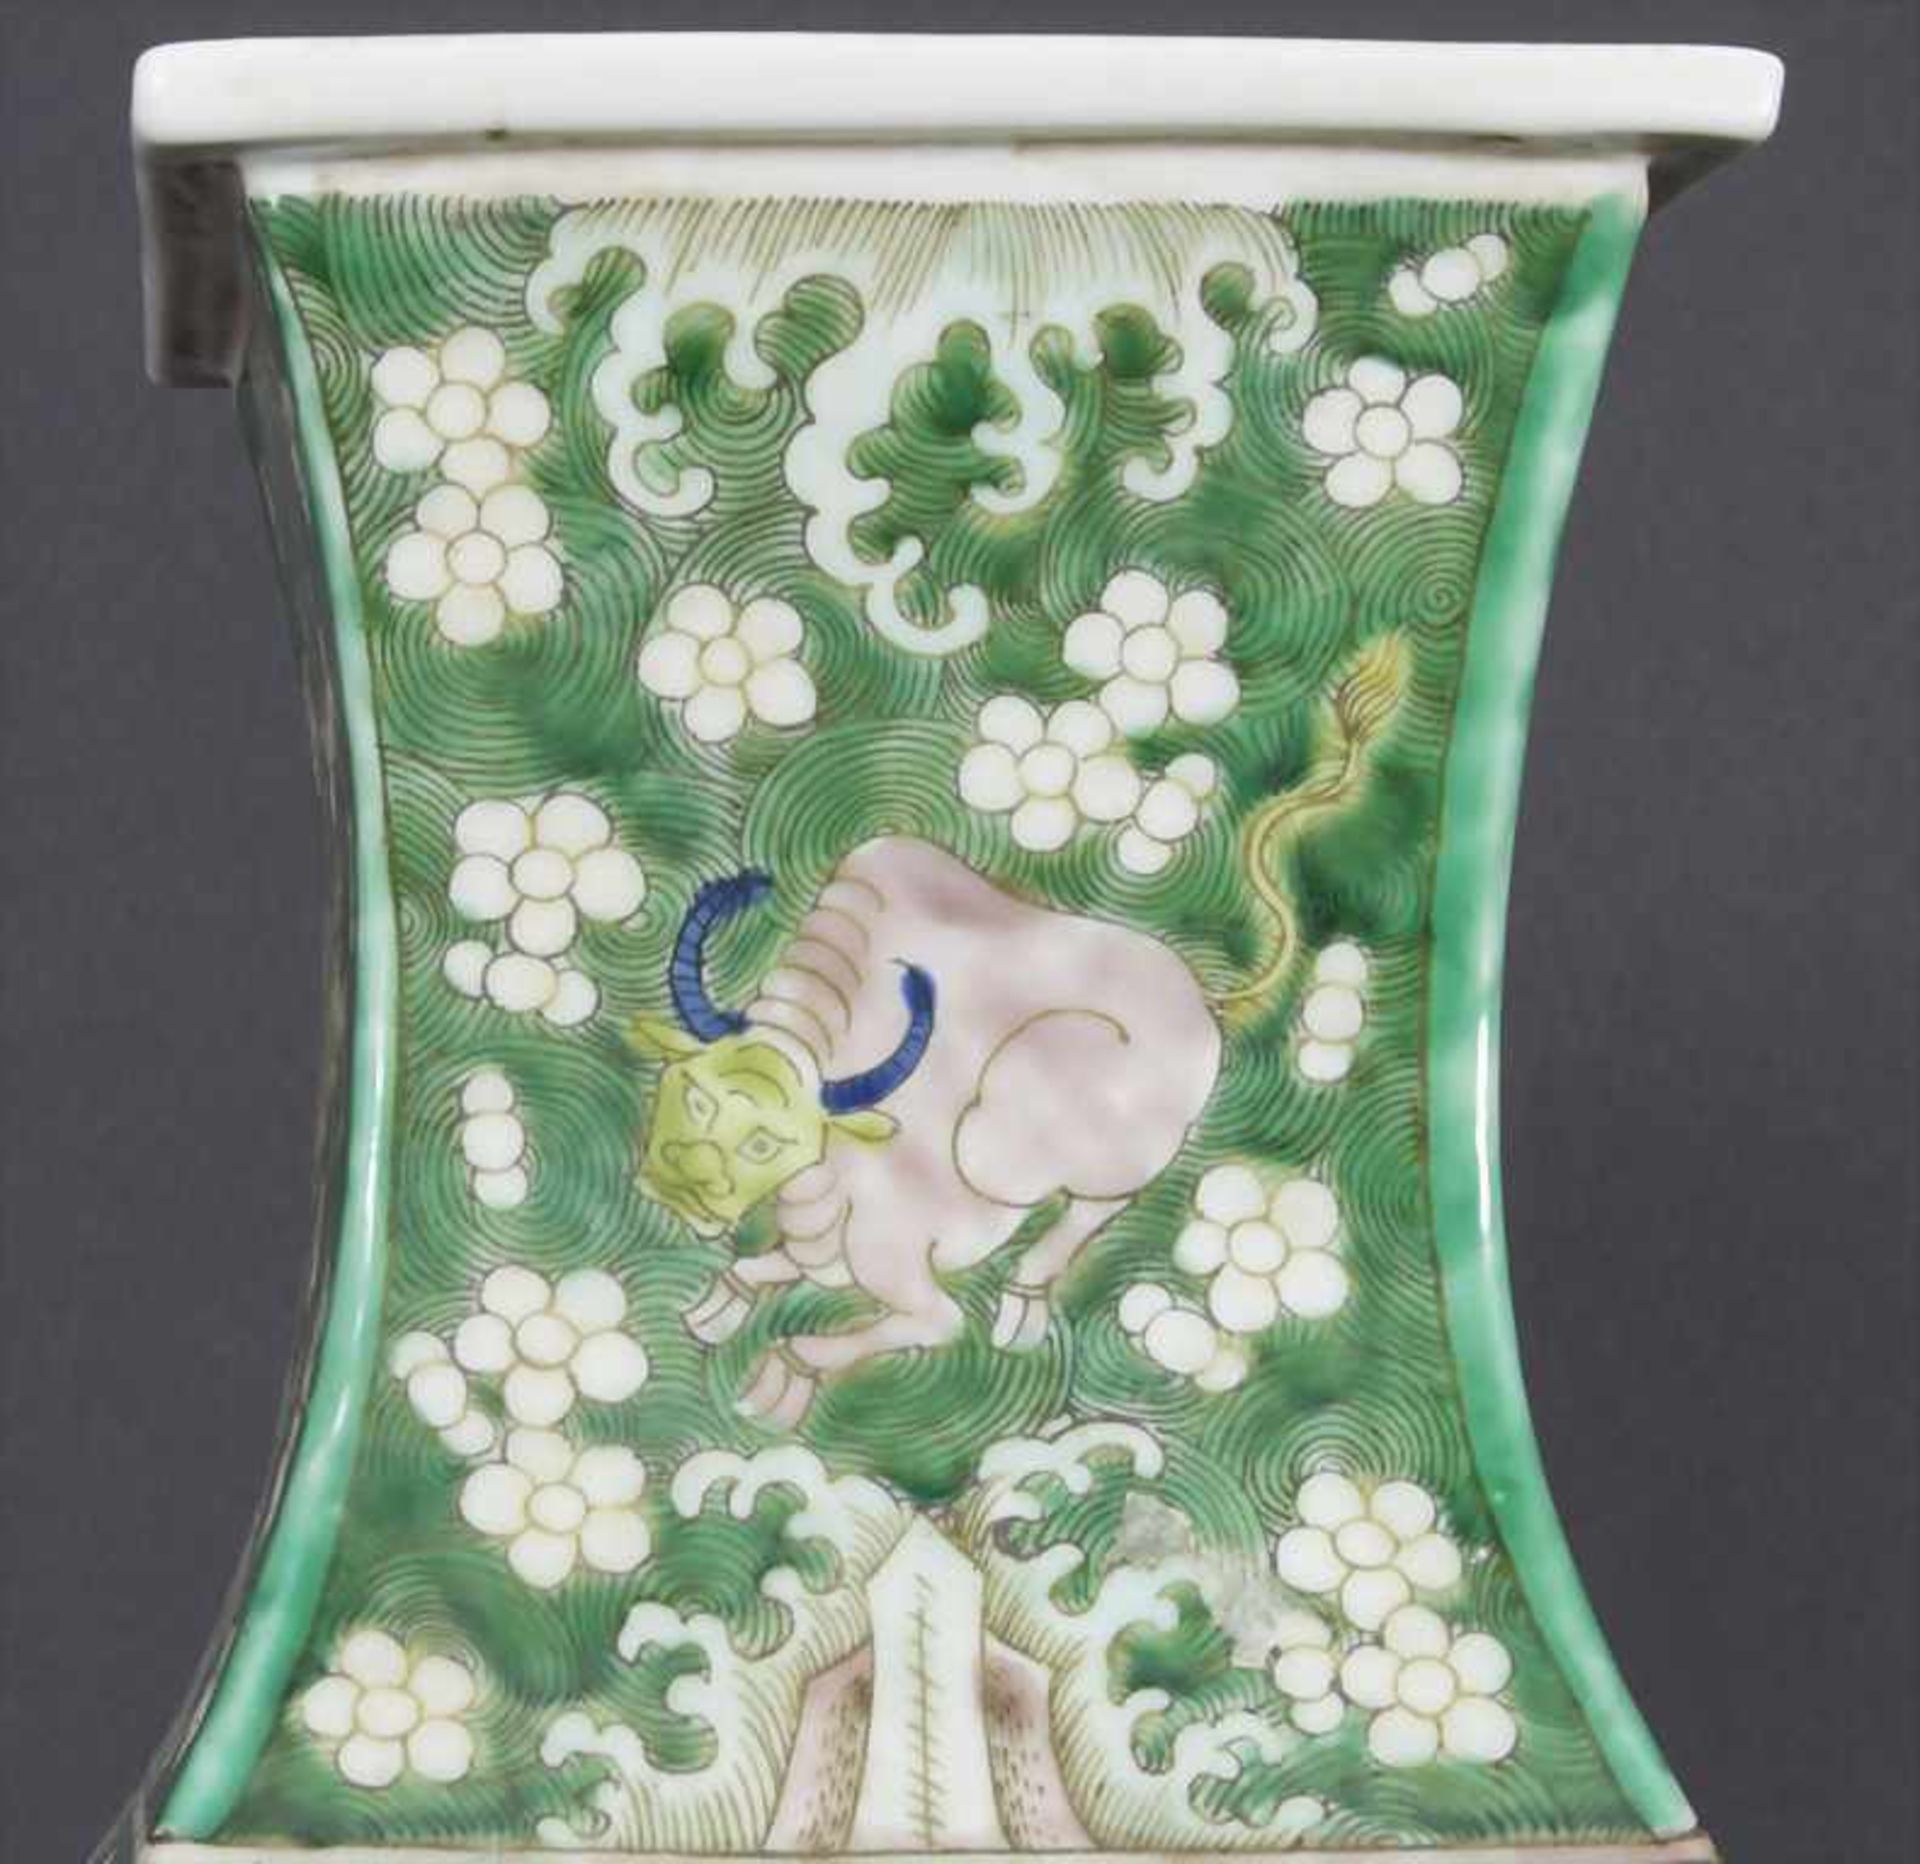 Ziervase, China, späte Qing-Dynastie, 19./20. Jh.Material: Porzellan, polychrom bemalt,Marke/ - Bild 6 aus 17